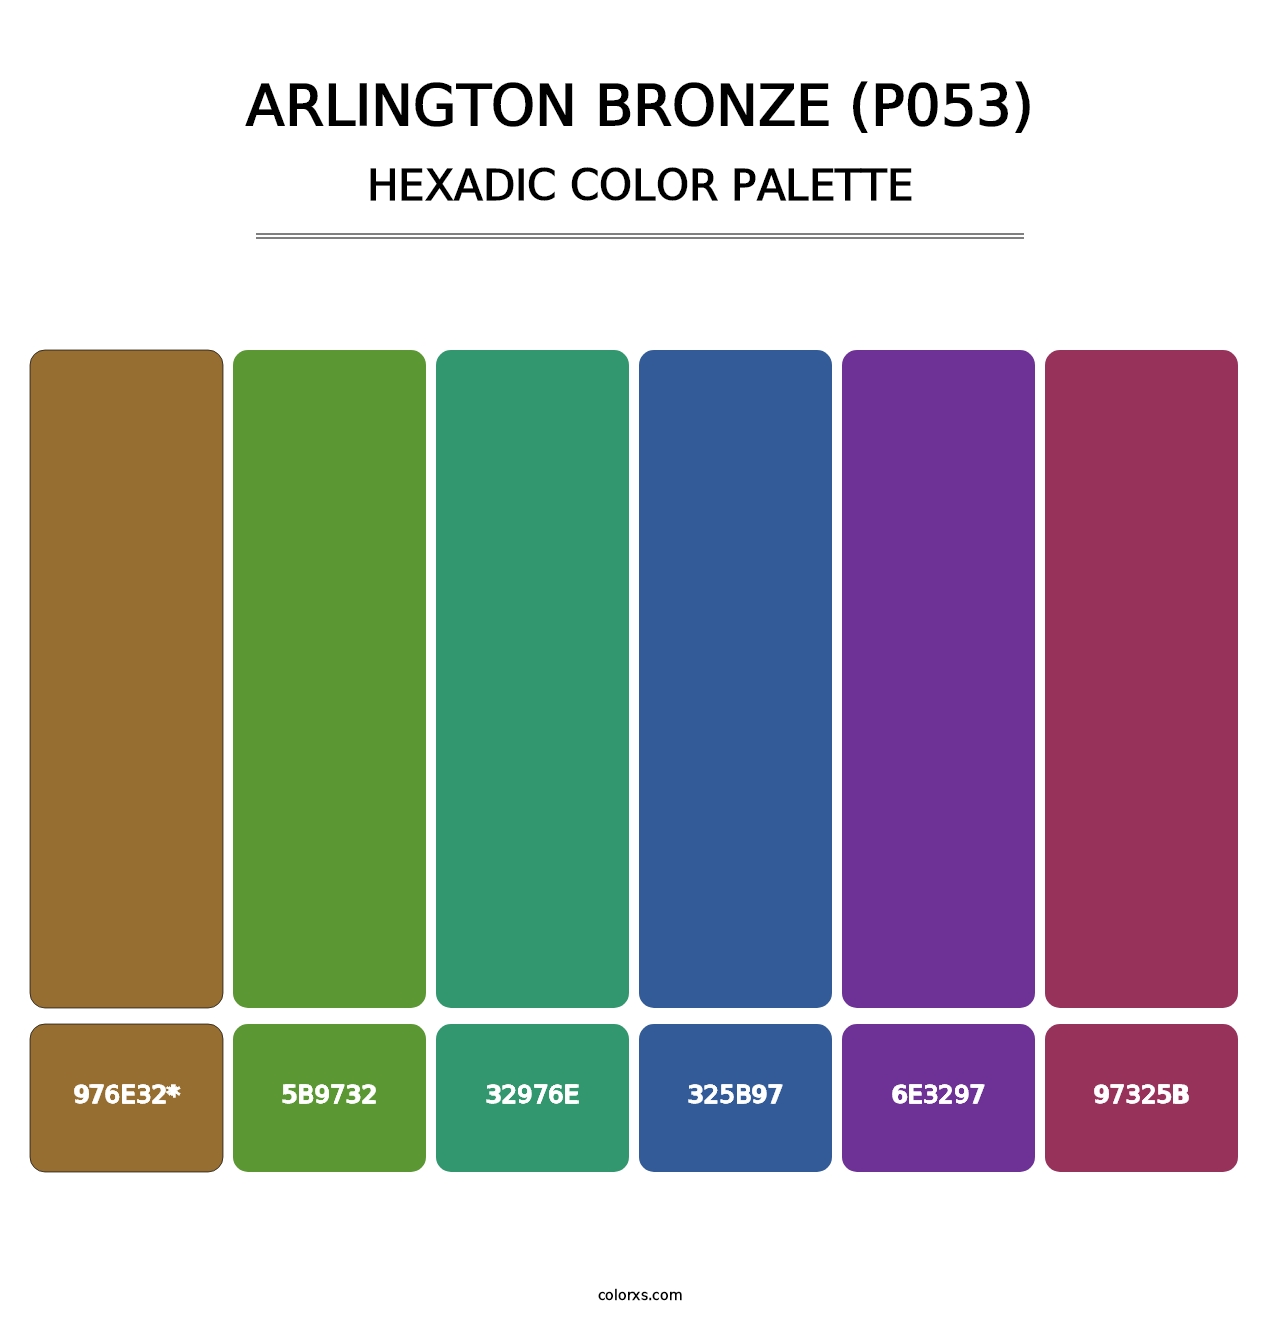 Arlington Bronze (P053) - Hexadic Color Palette